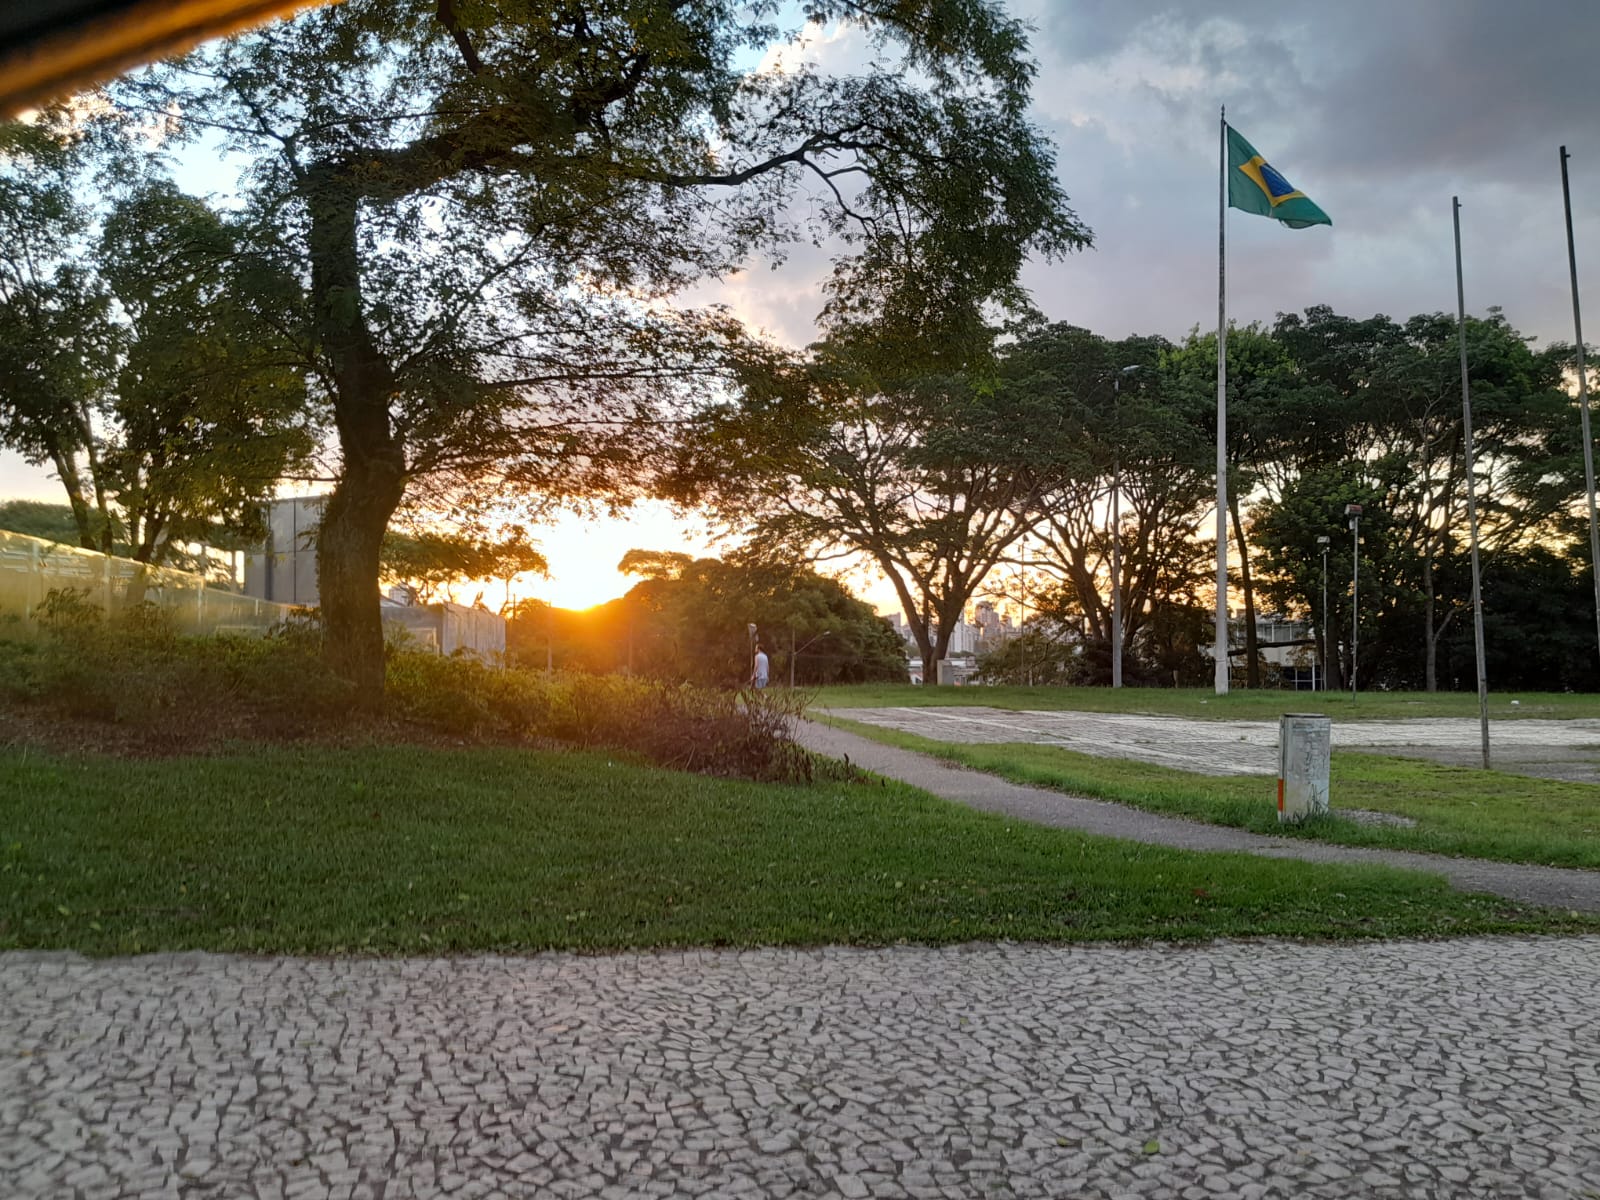 Veja os melhores lugares para ver o pôr do sol em Curitiba neste primeiro domingo de Inverno